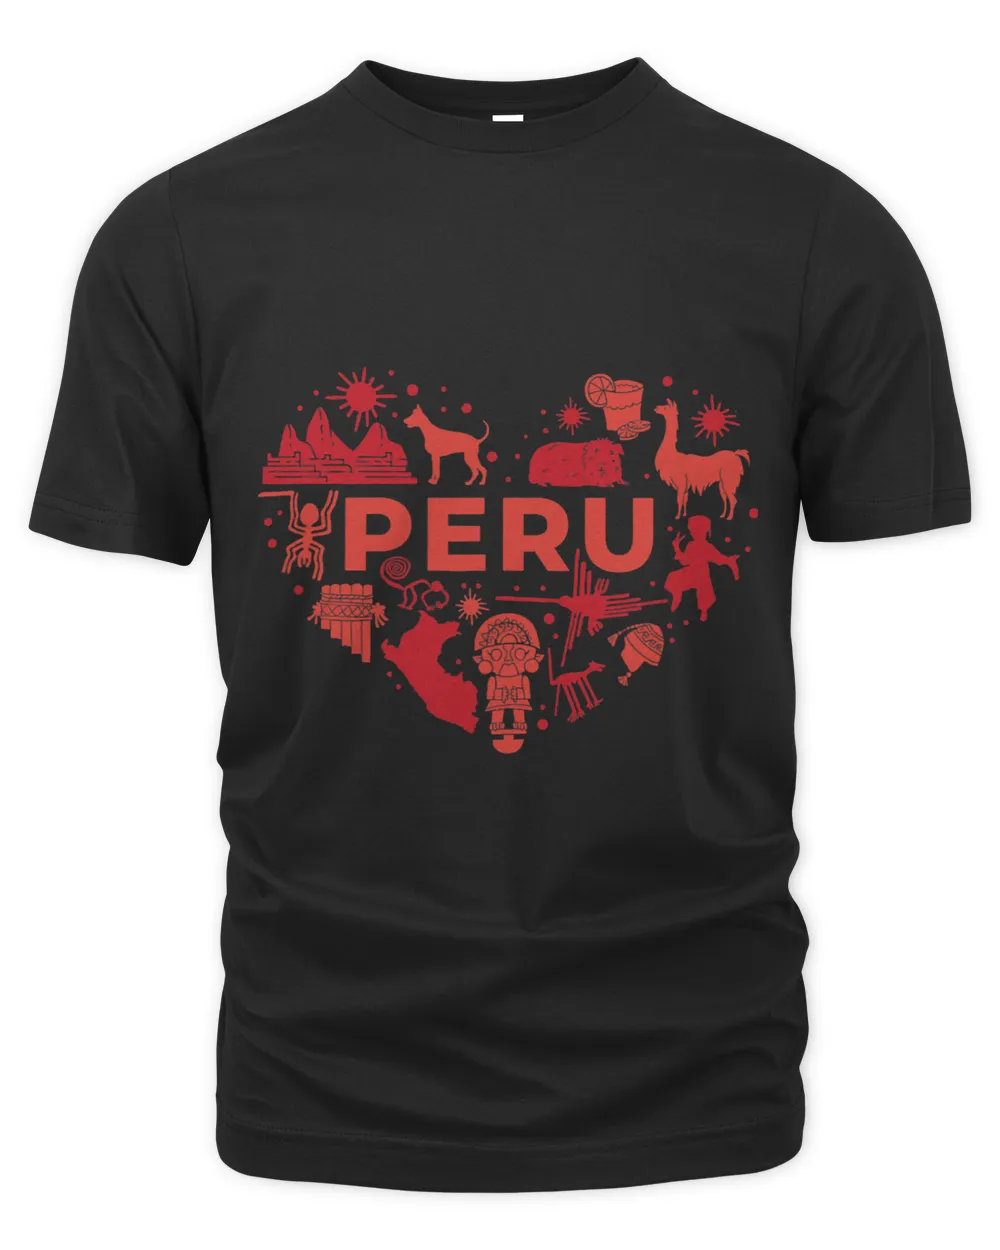 Republic of Peru Heritage Pride Heart Shaped Peruvian Pride